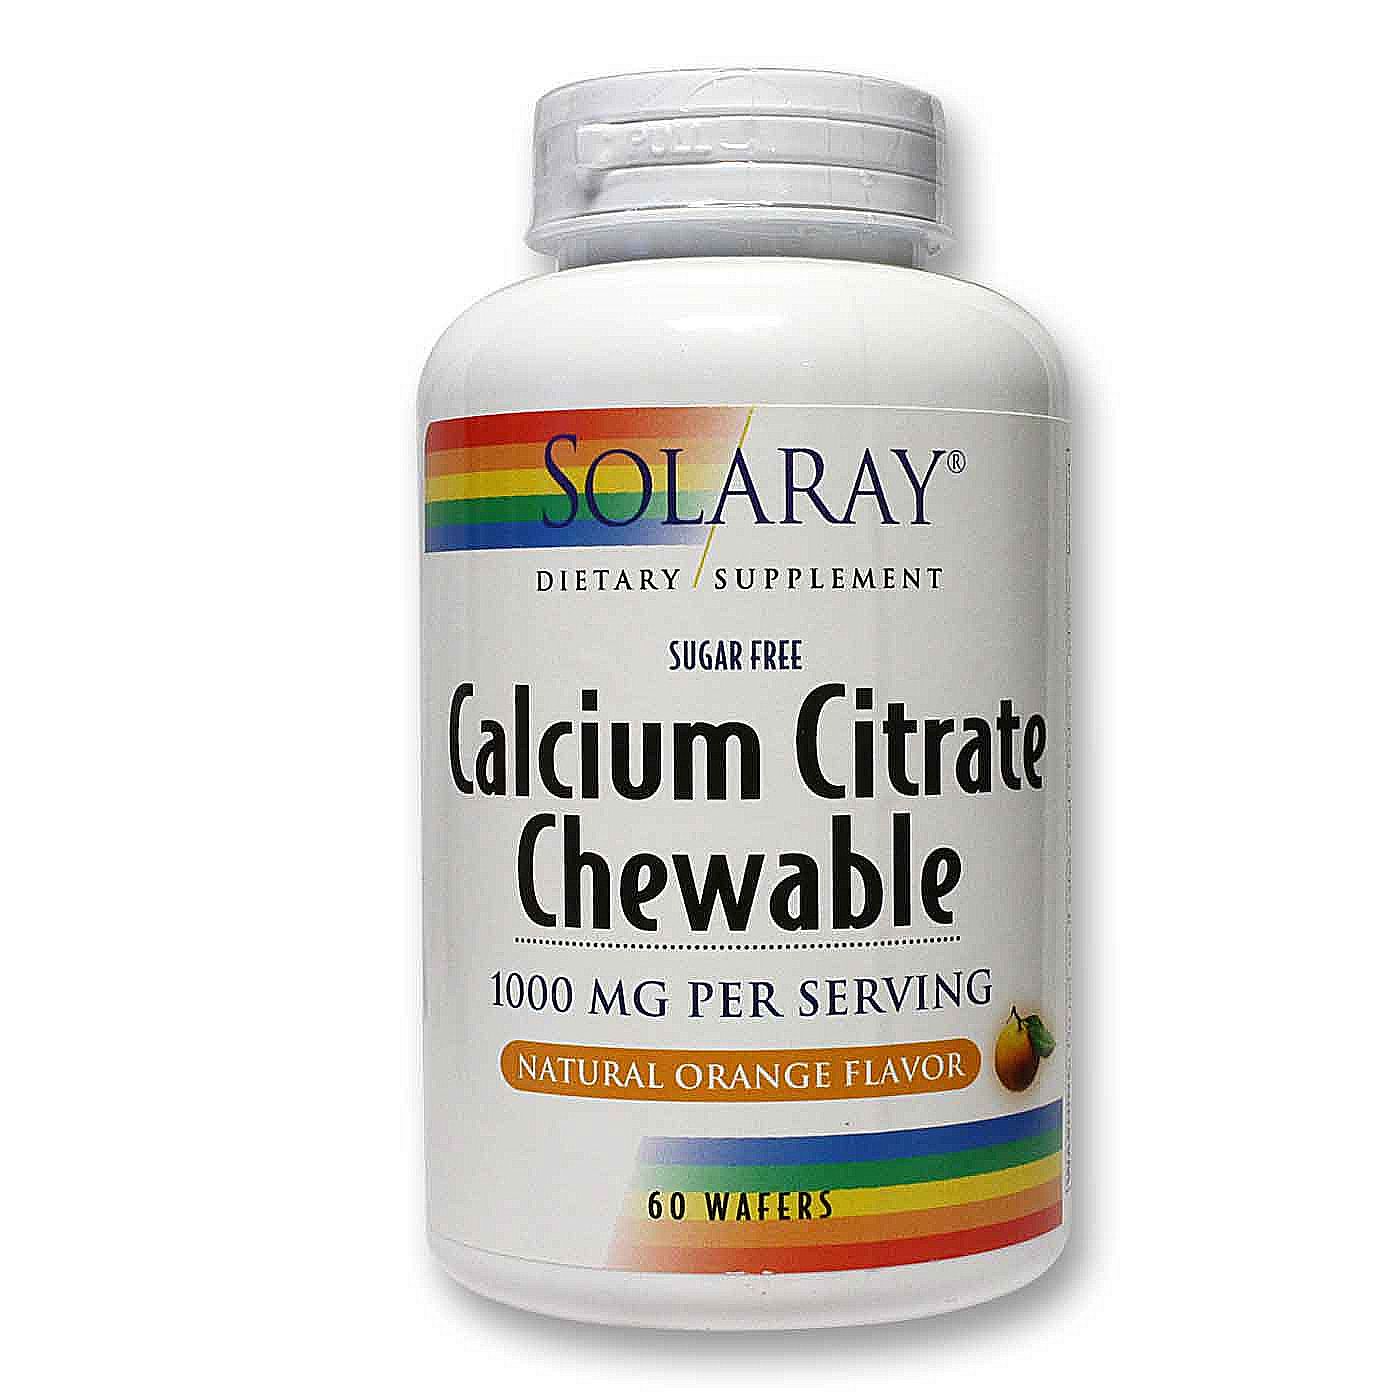 Calcium citrate supplements